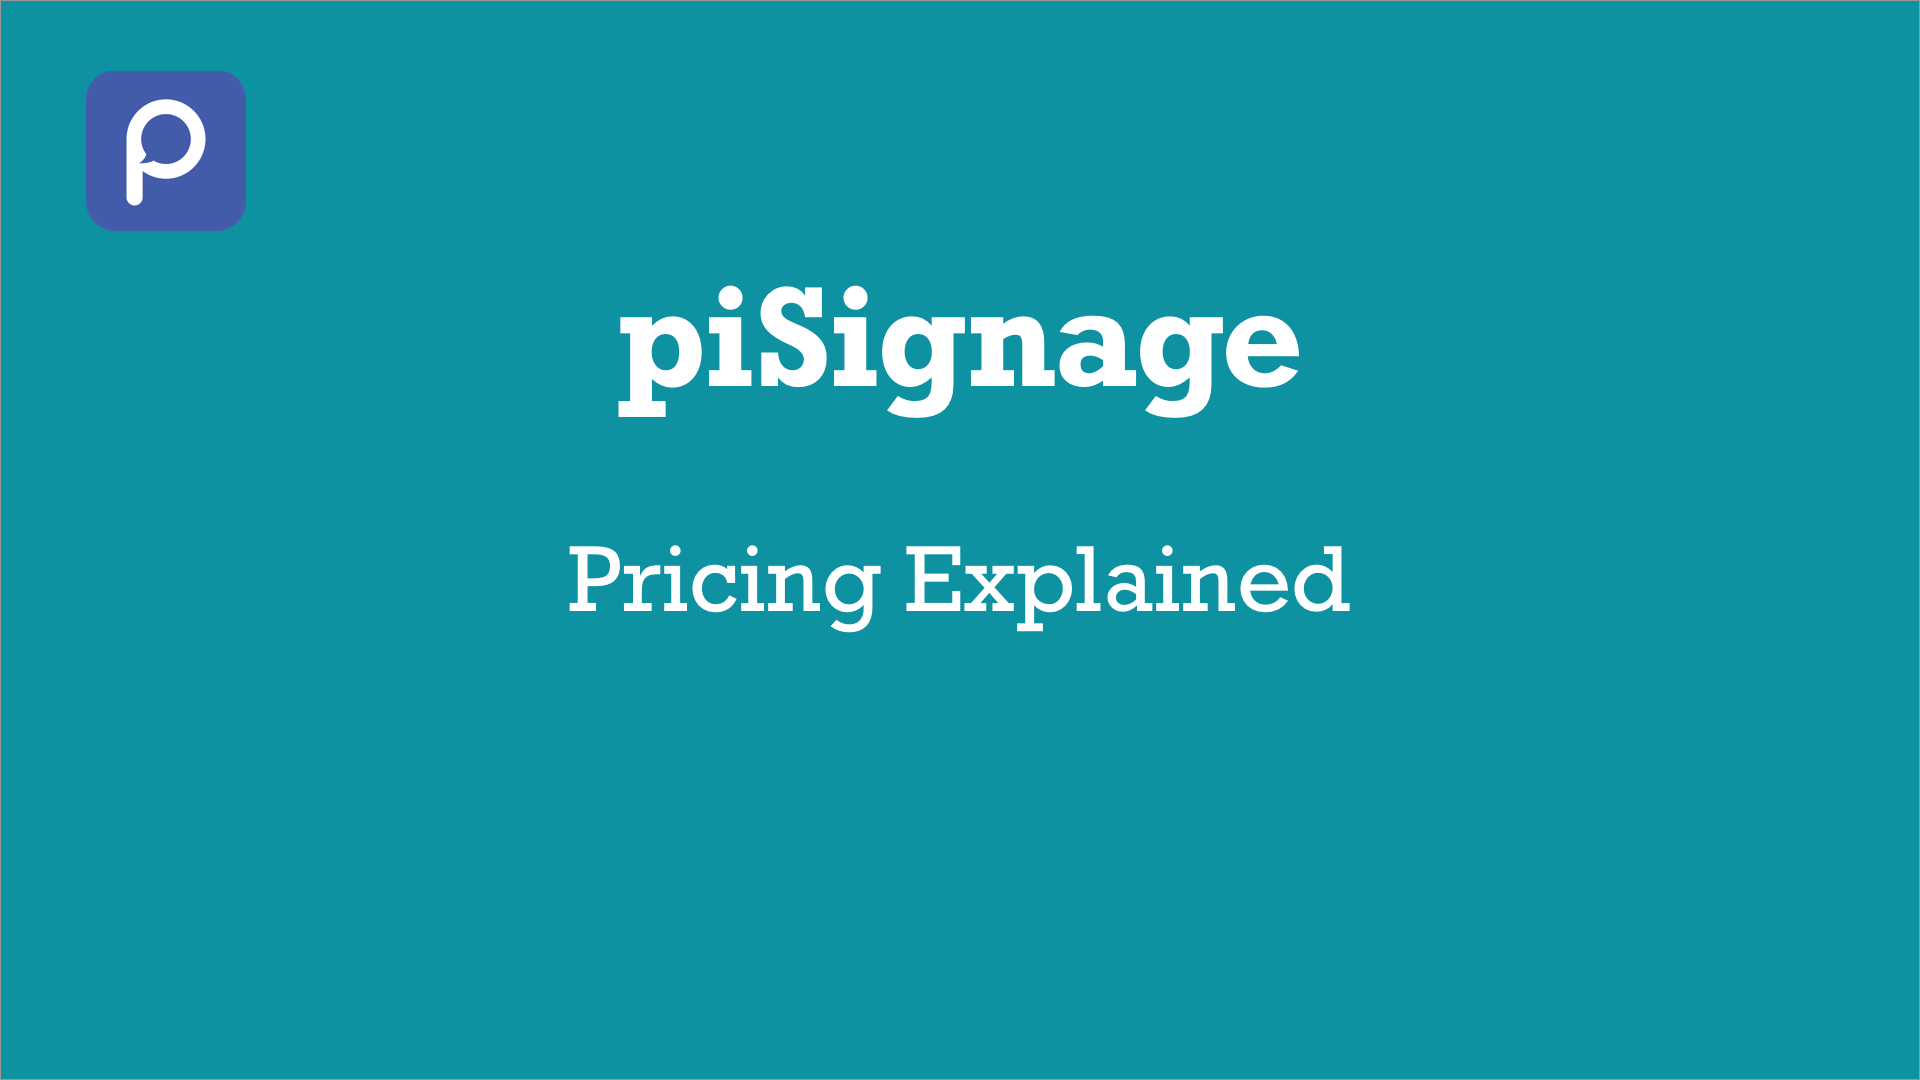 piSignage pricing explained